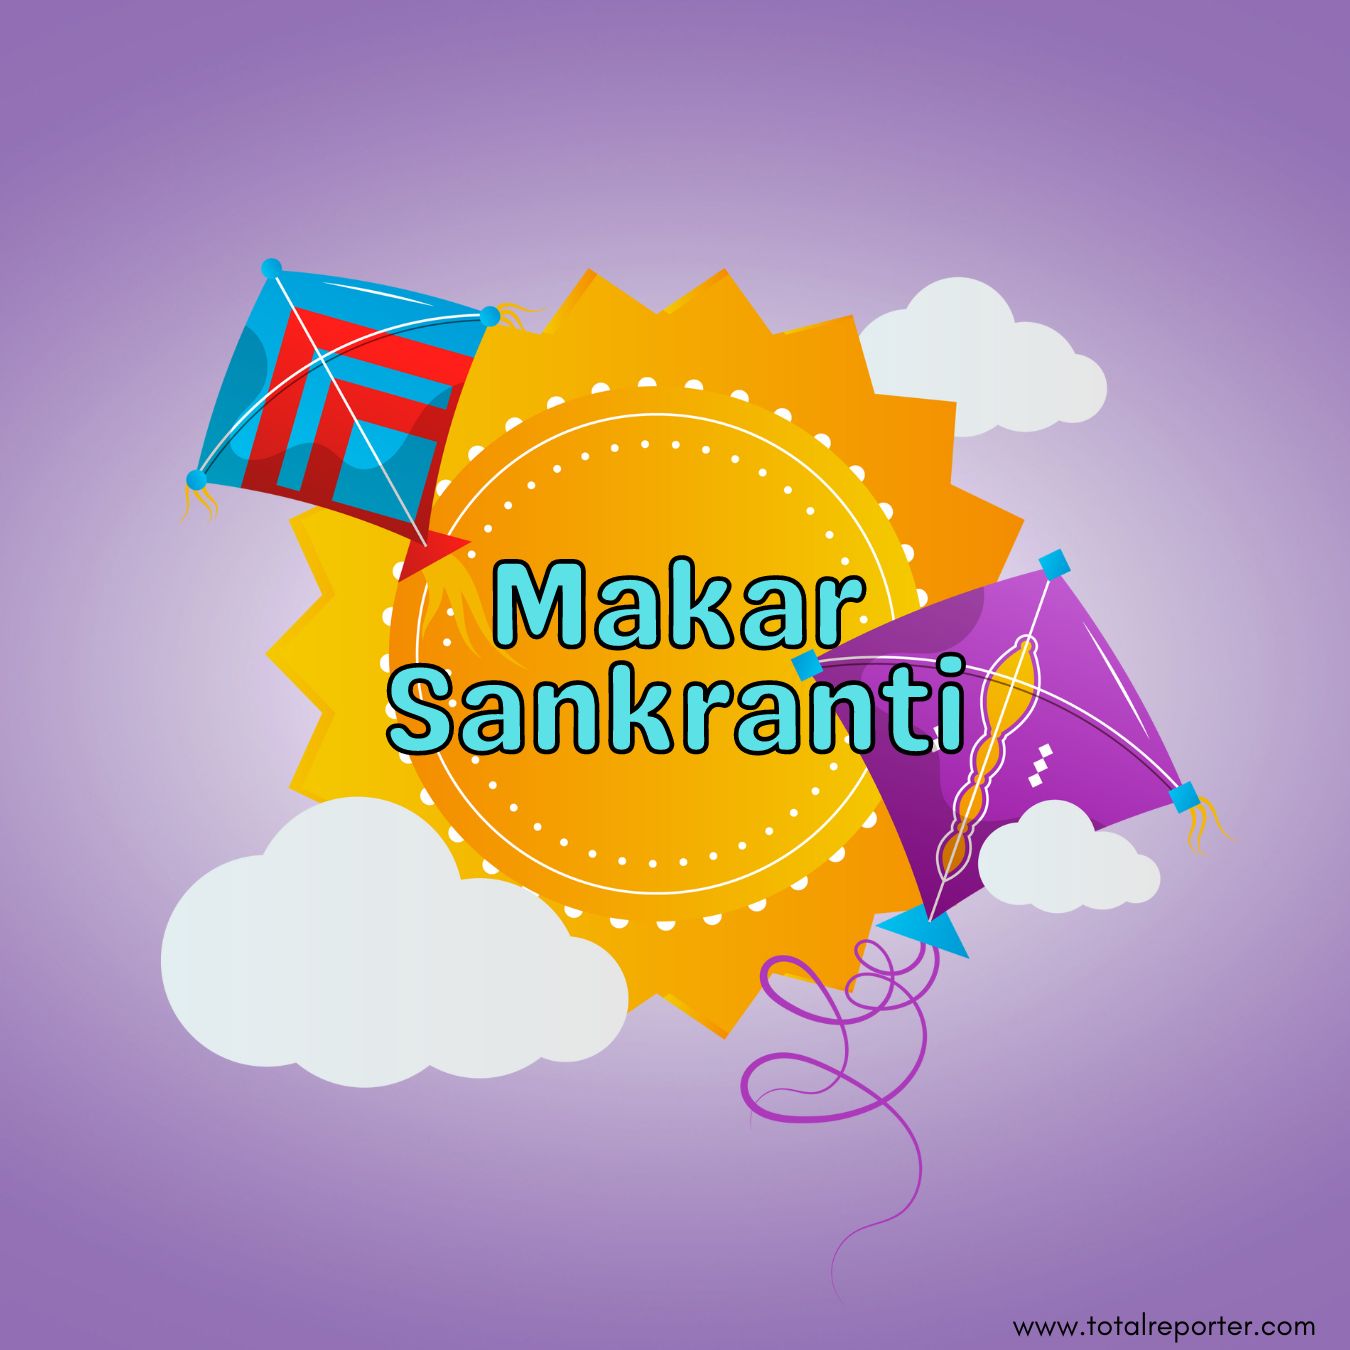 Makar Sankranti Kite image 2023